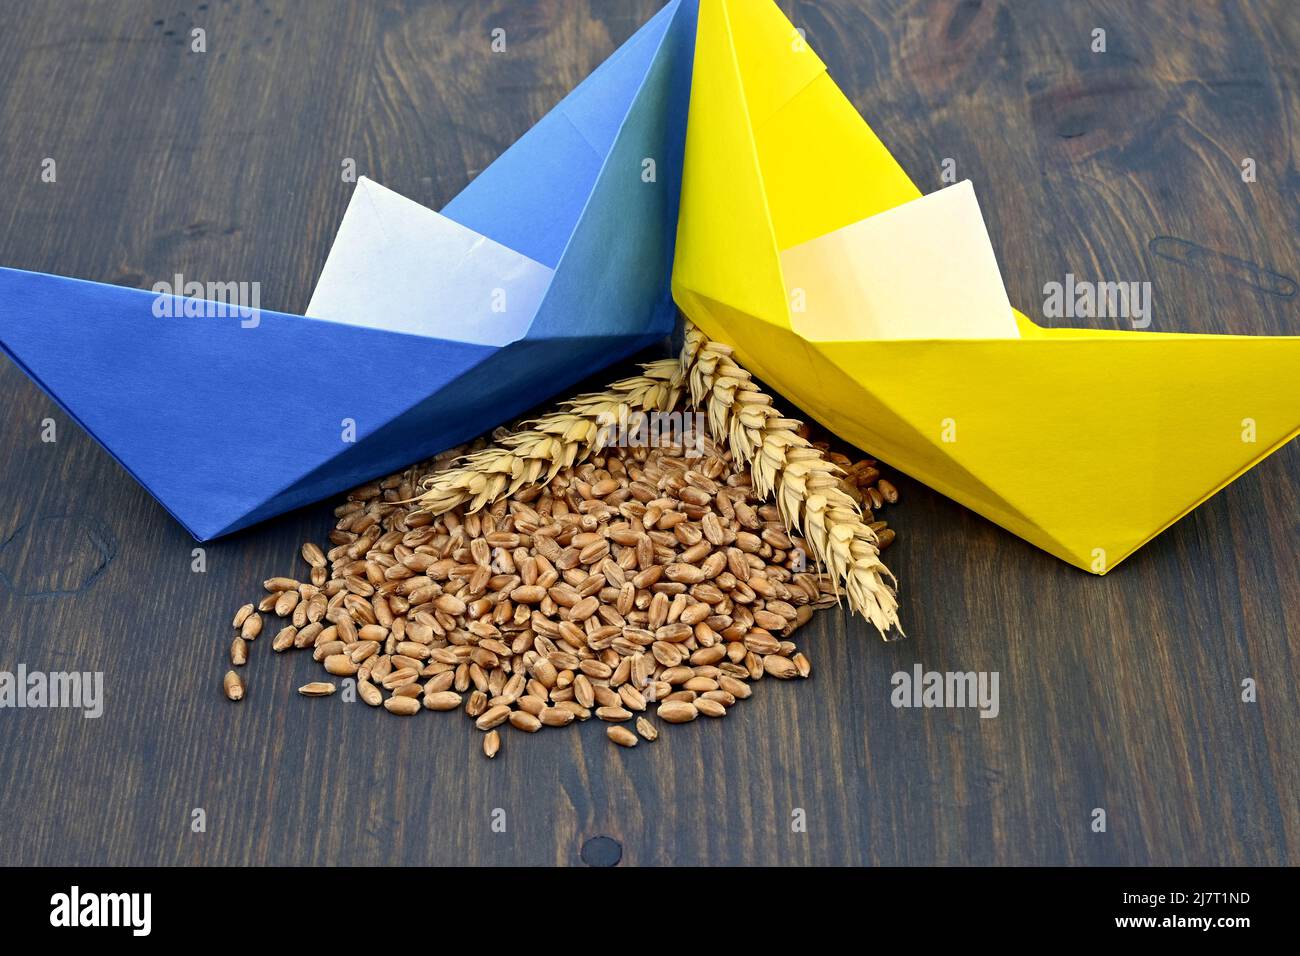 Le drapeau ukrainien colore les bateaux à base d'origami et le grain de blé avec des épis de blé mûrs. Concept de problèmes de flottement du grain Banque D'Images